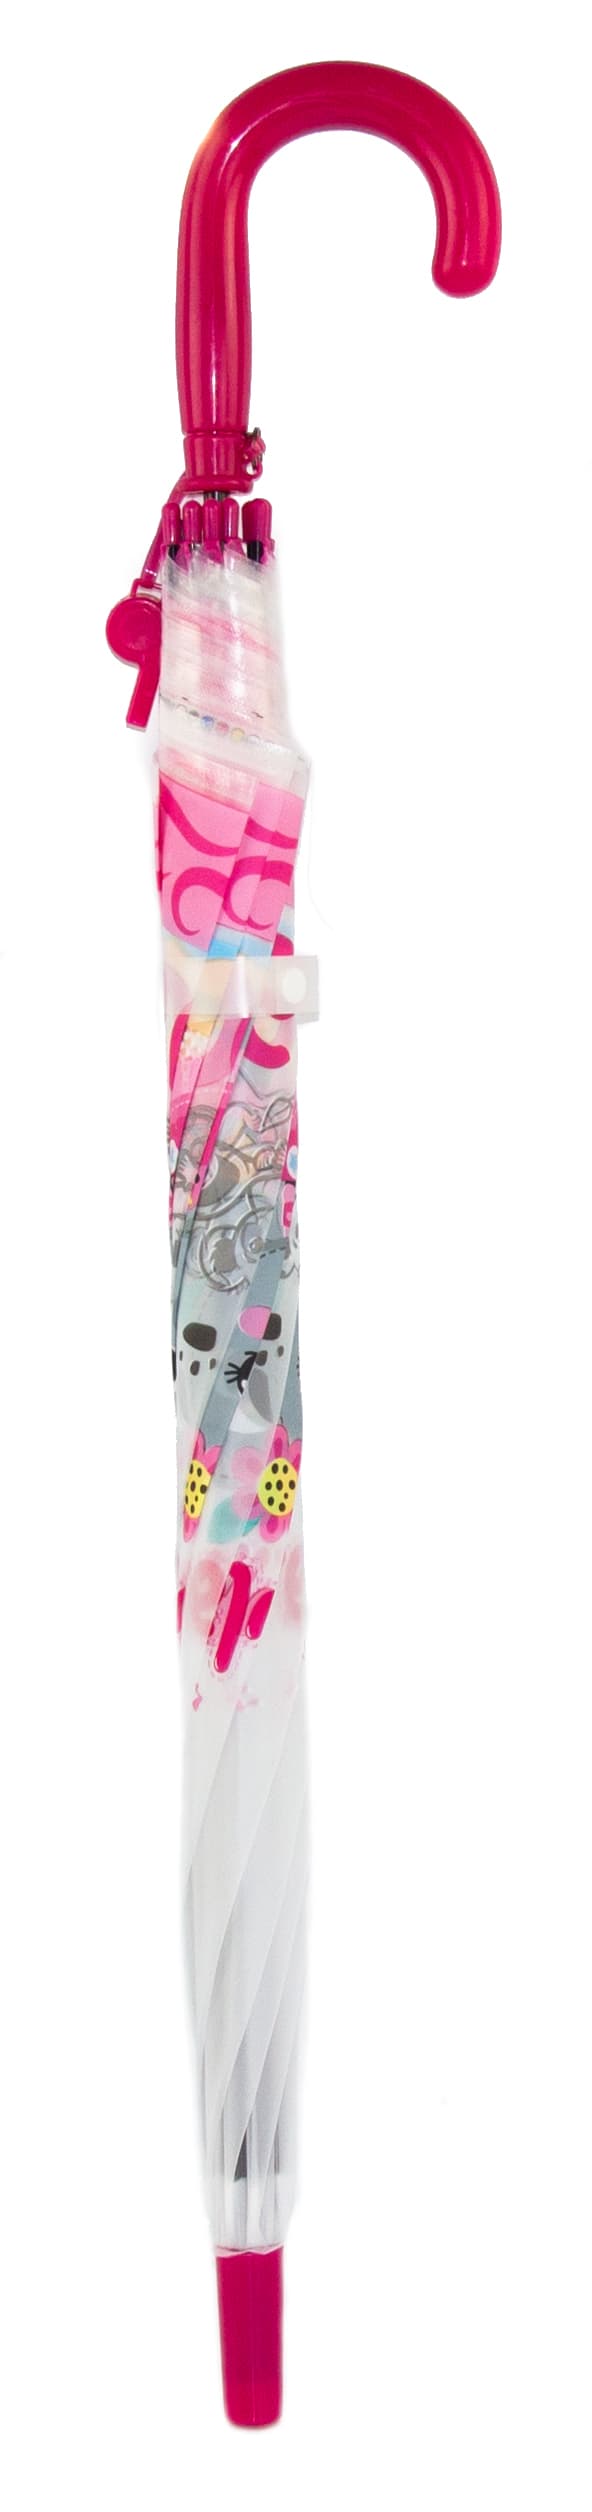 Зонтик детский «Животные» со свистком, полуавтомат, матовый, 80 см., 43410 / Розовый